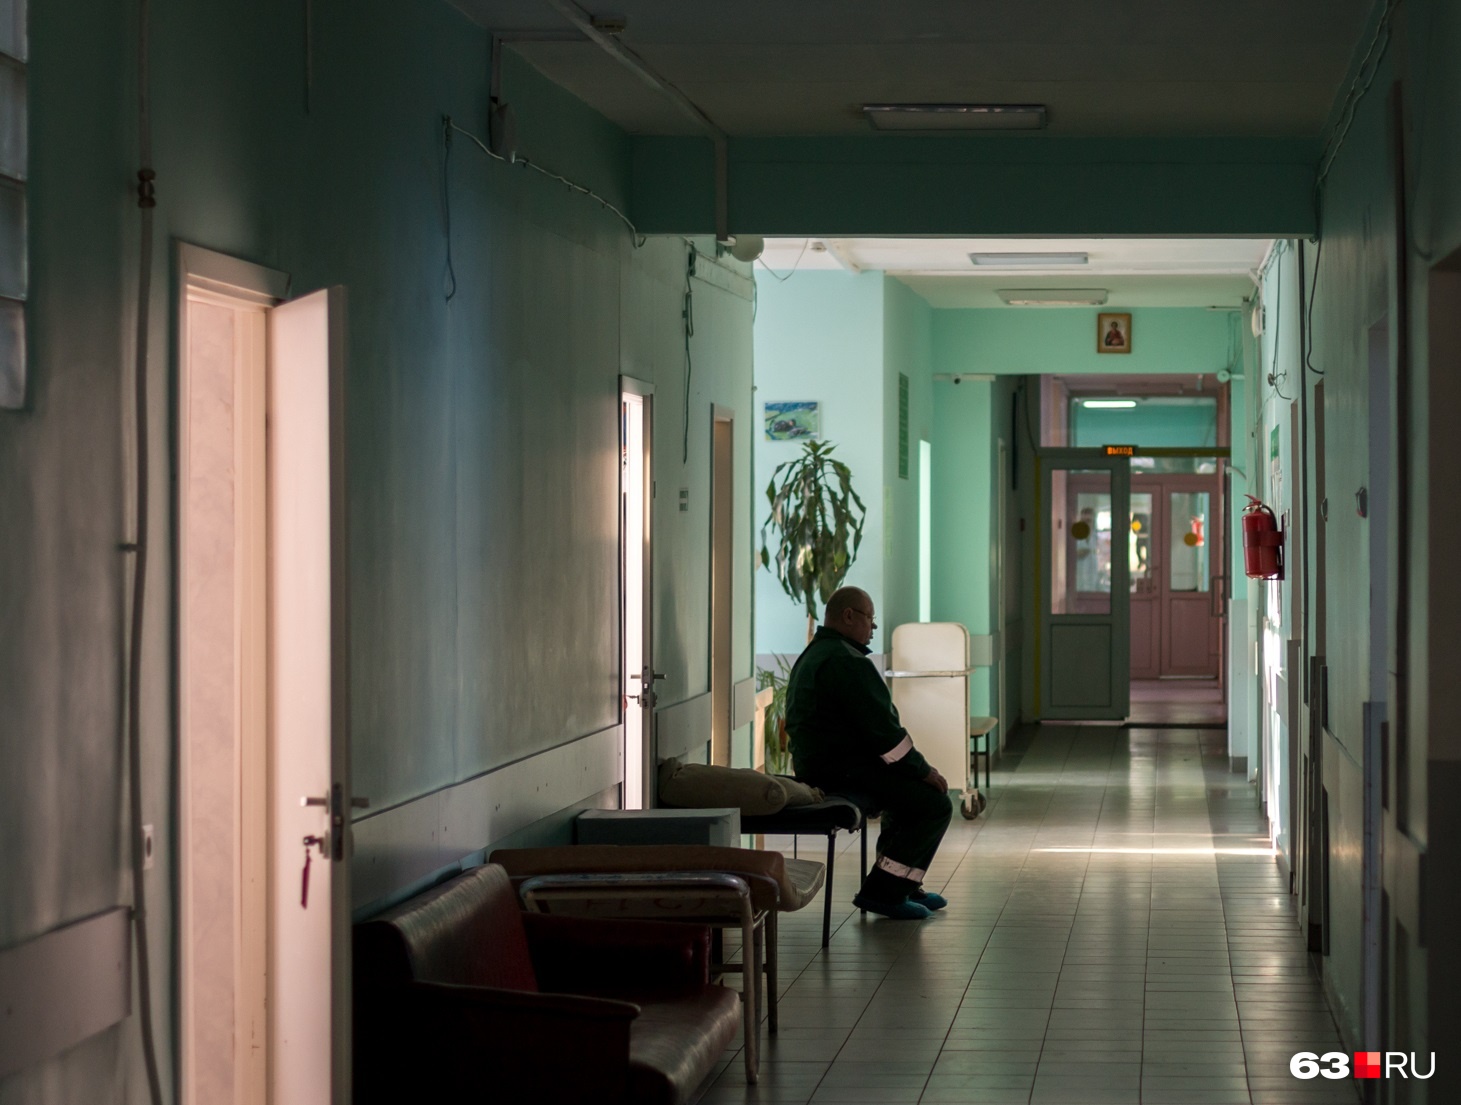 В Самаре главный врач больницы получил выговор за размещение пациентов в коридорах